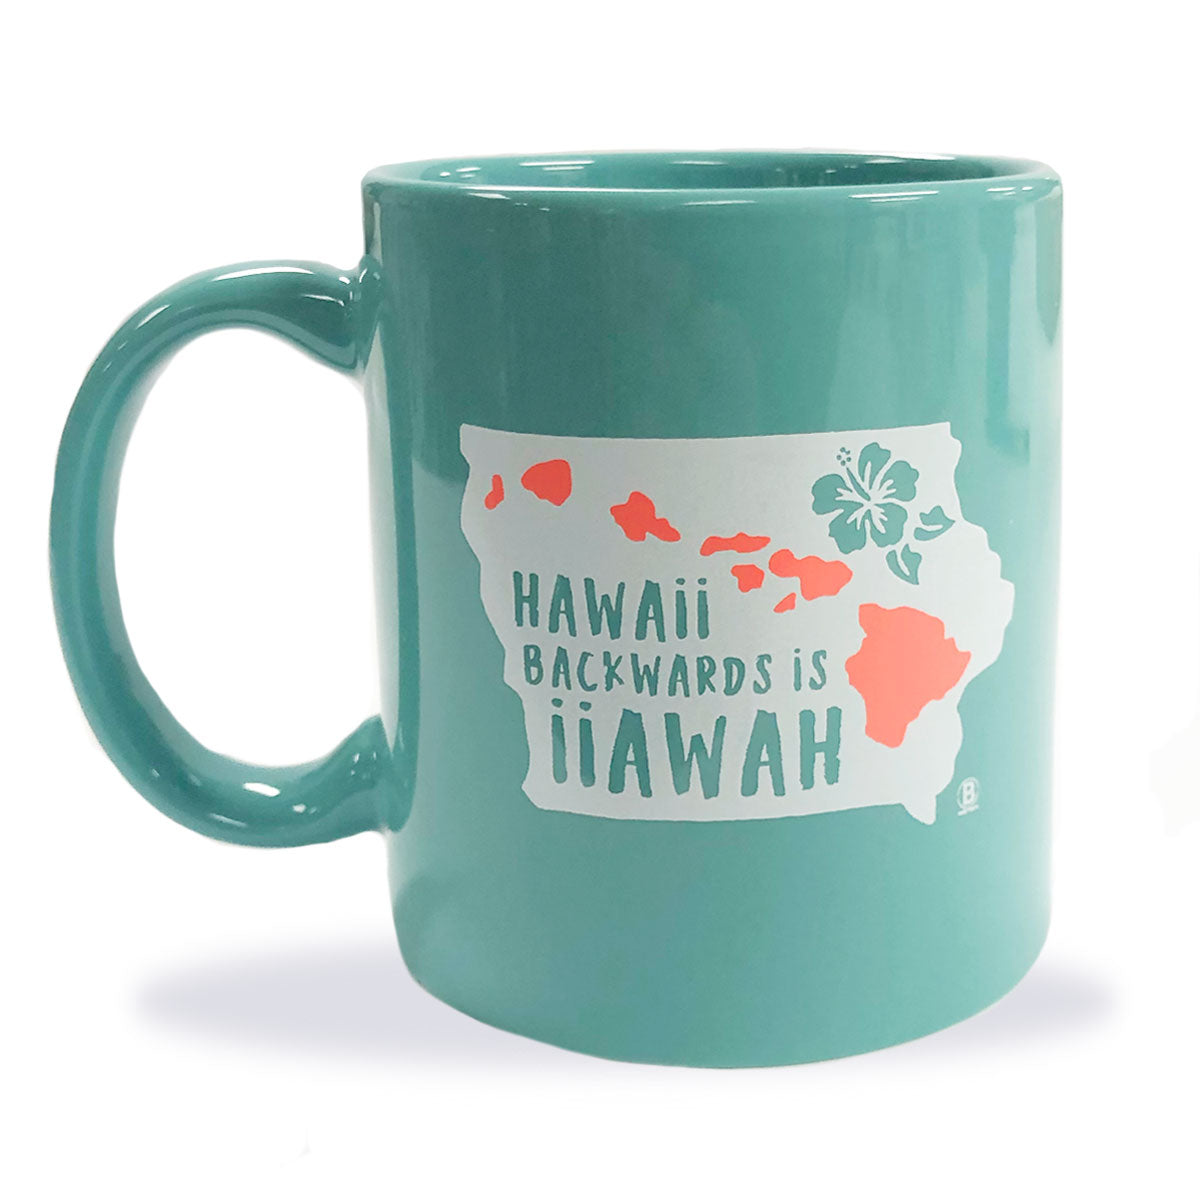 Hawaii Backwards is Iiawah Mug - Bozz Prints